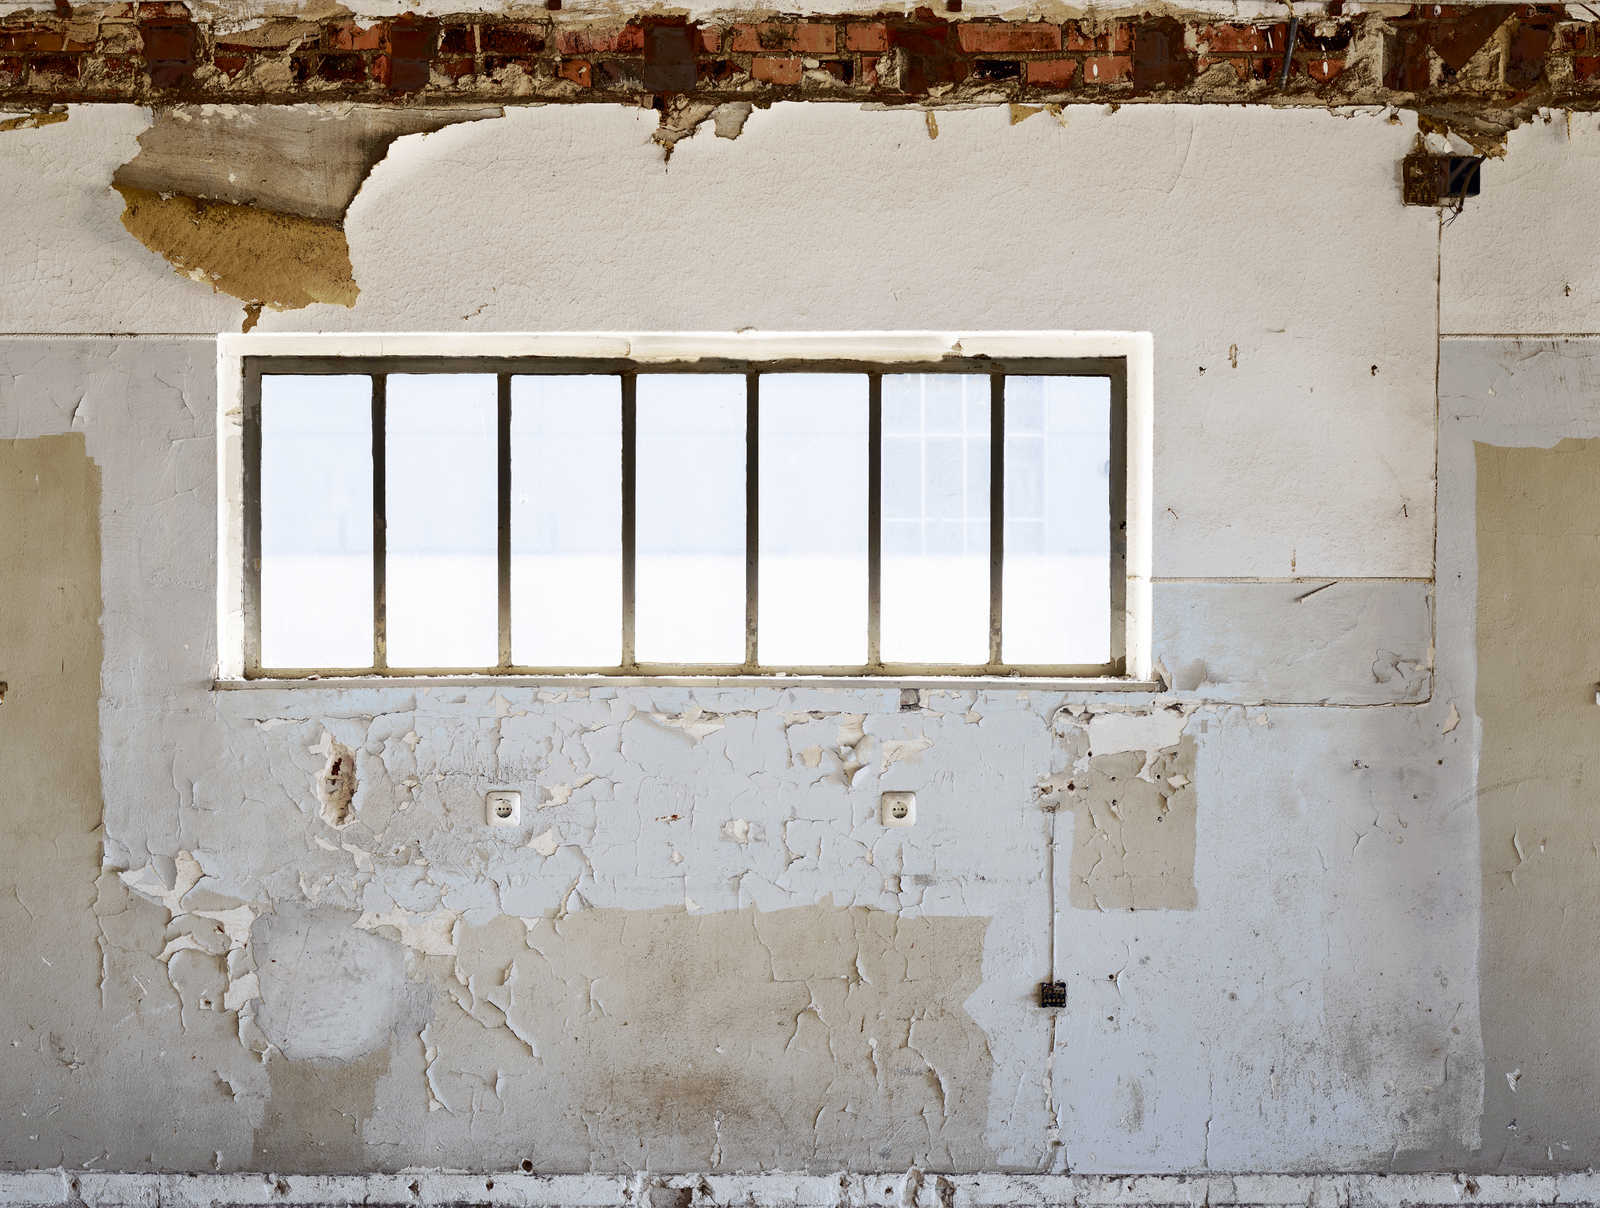             Carta da parati in tessuto non tessuto per pareti di stanze rotte con finestra - beige, grigio, bianco
        